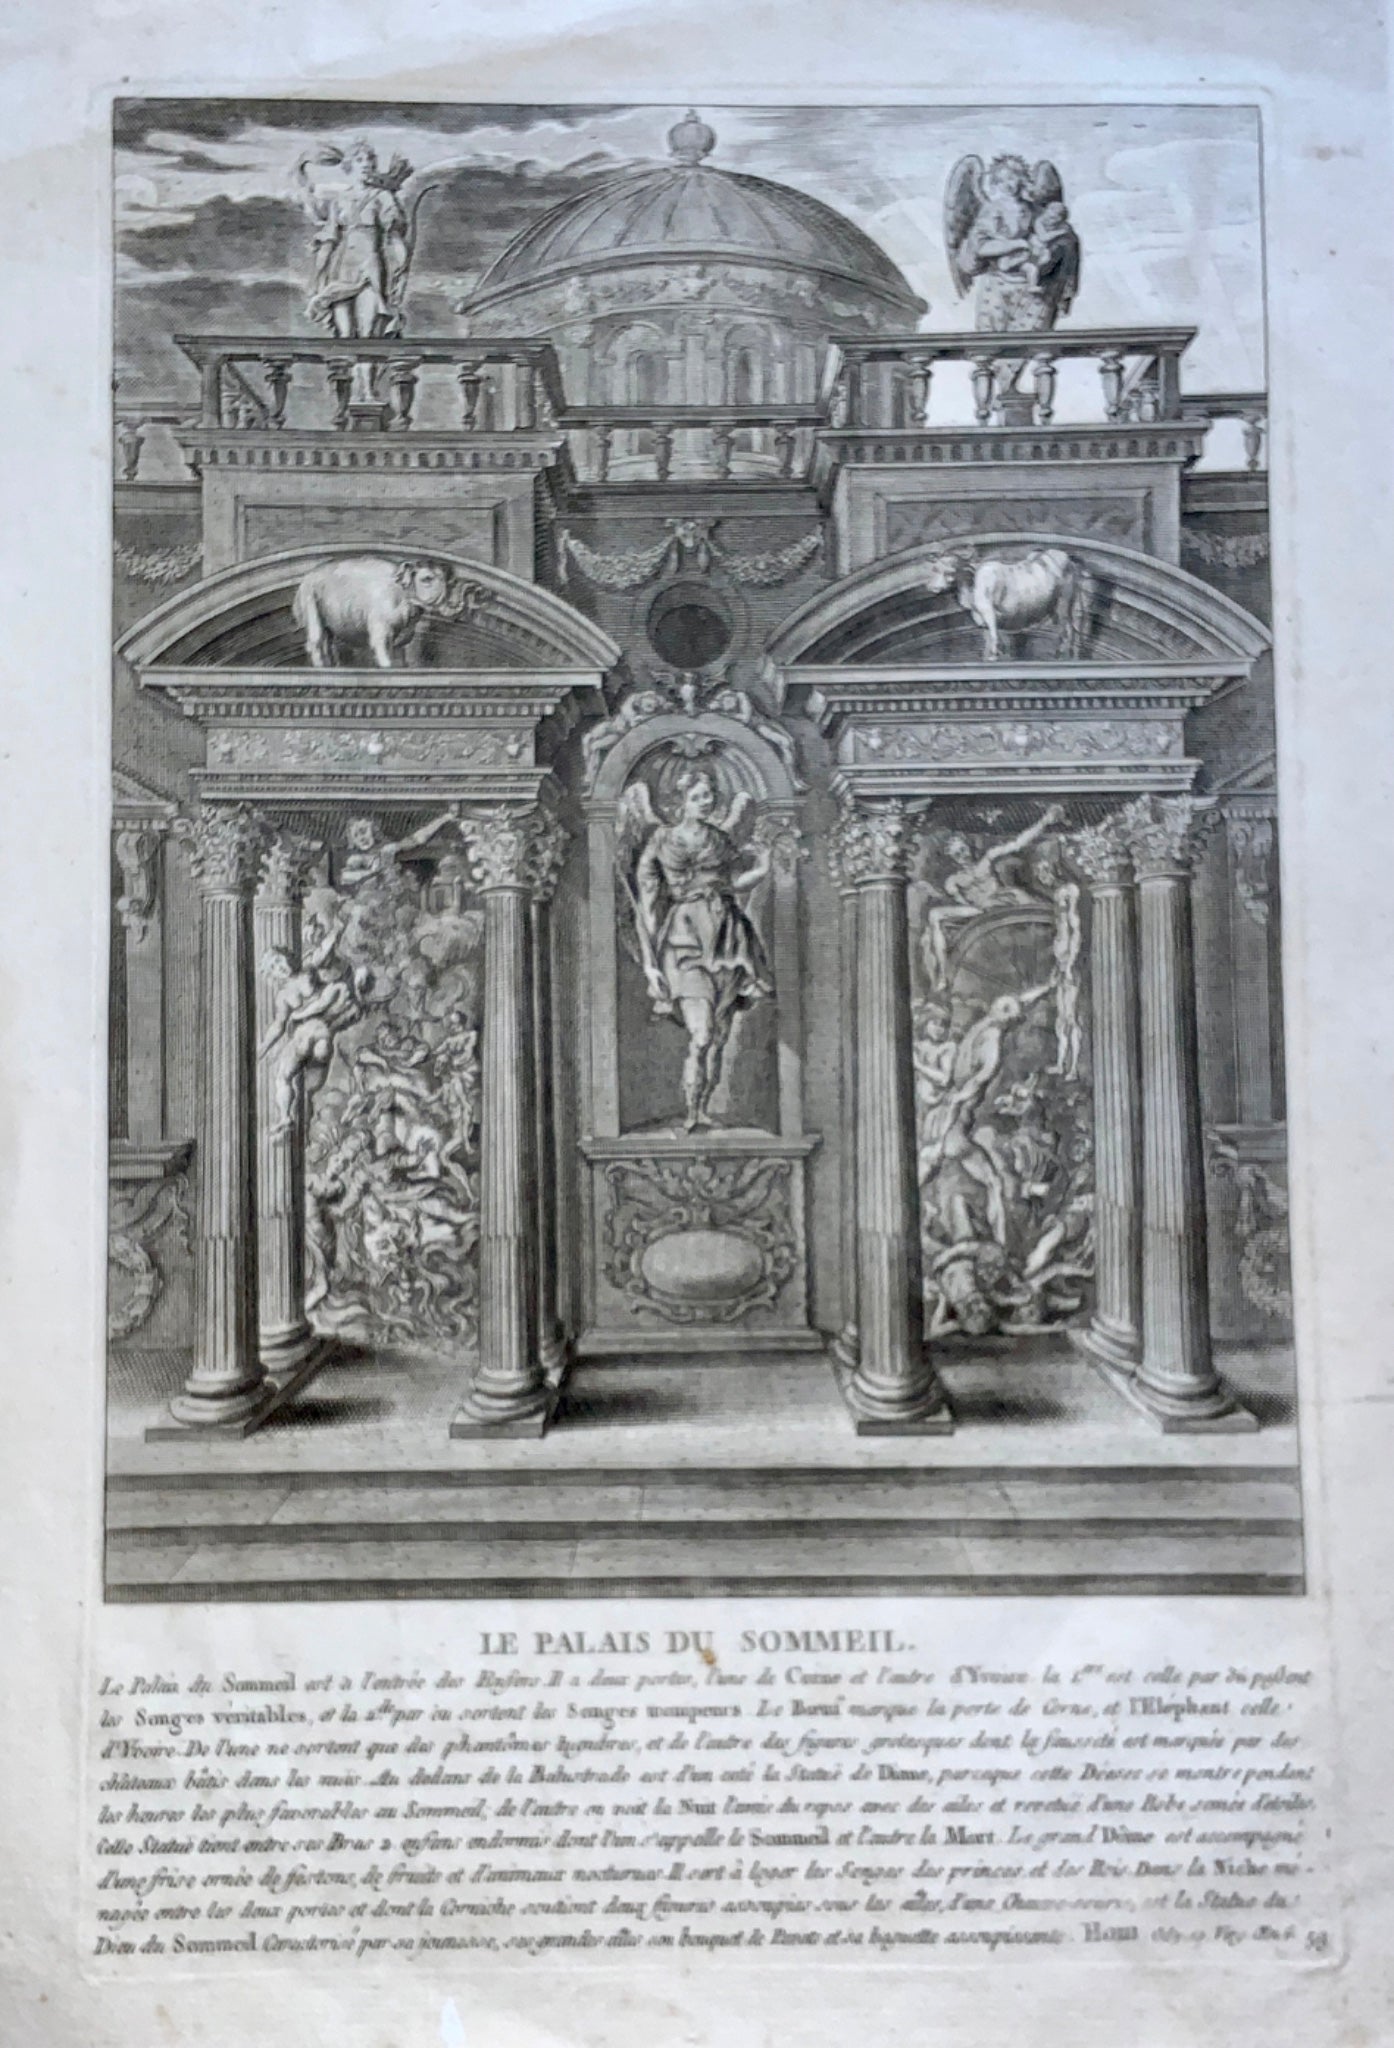 1740 Bernard Picart (1673-1733) after Deepenbieck PALACE of SLEEP